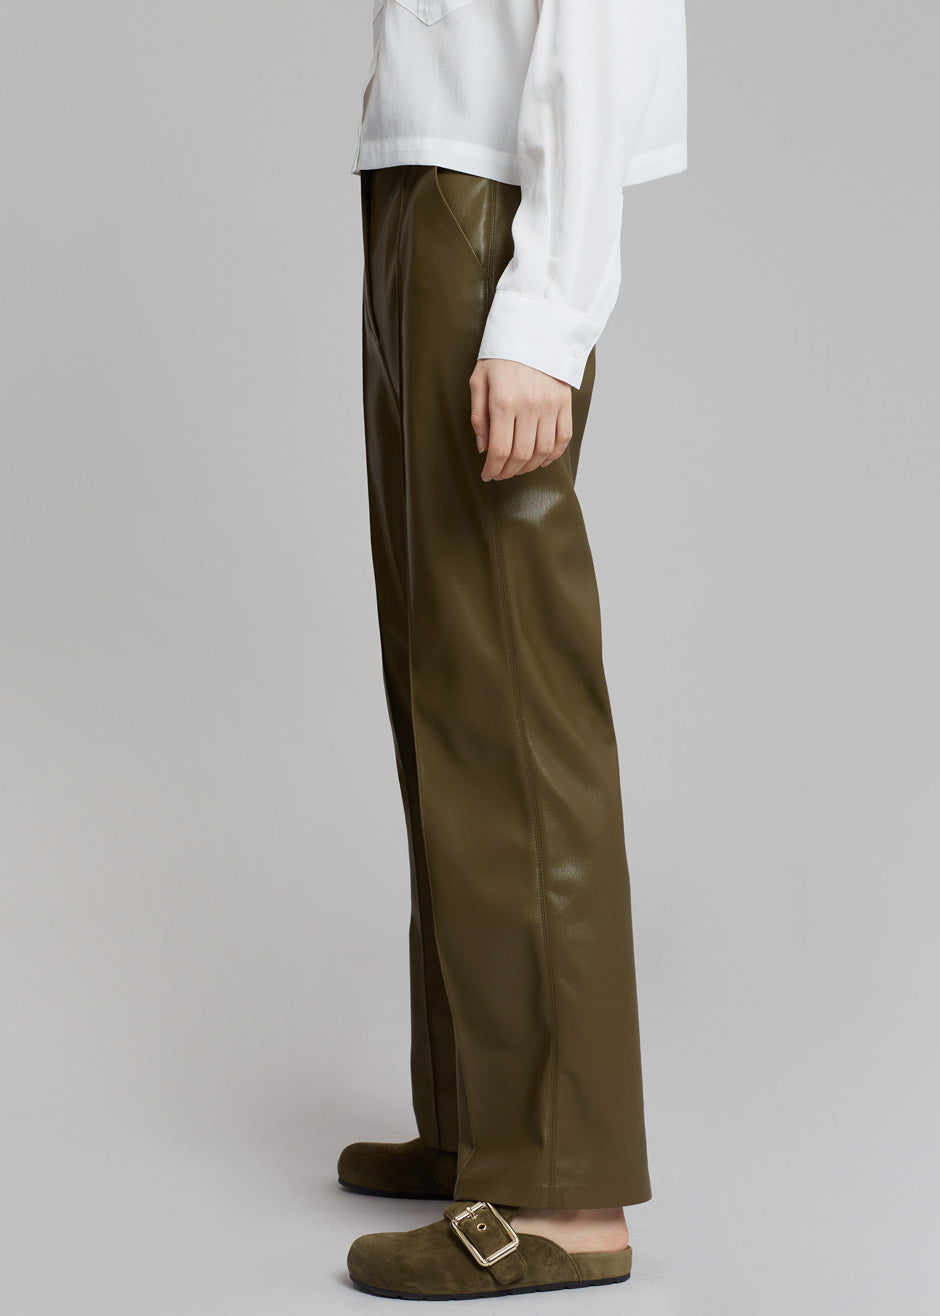 Nanushka Lucee Vegan Leather Pants - Olive - 4